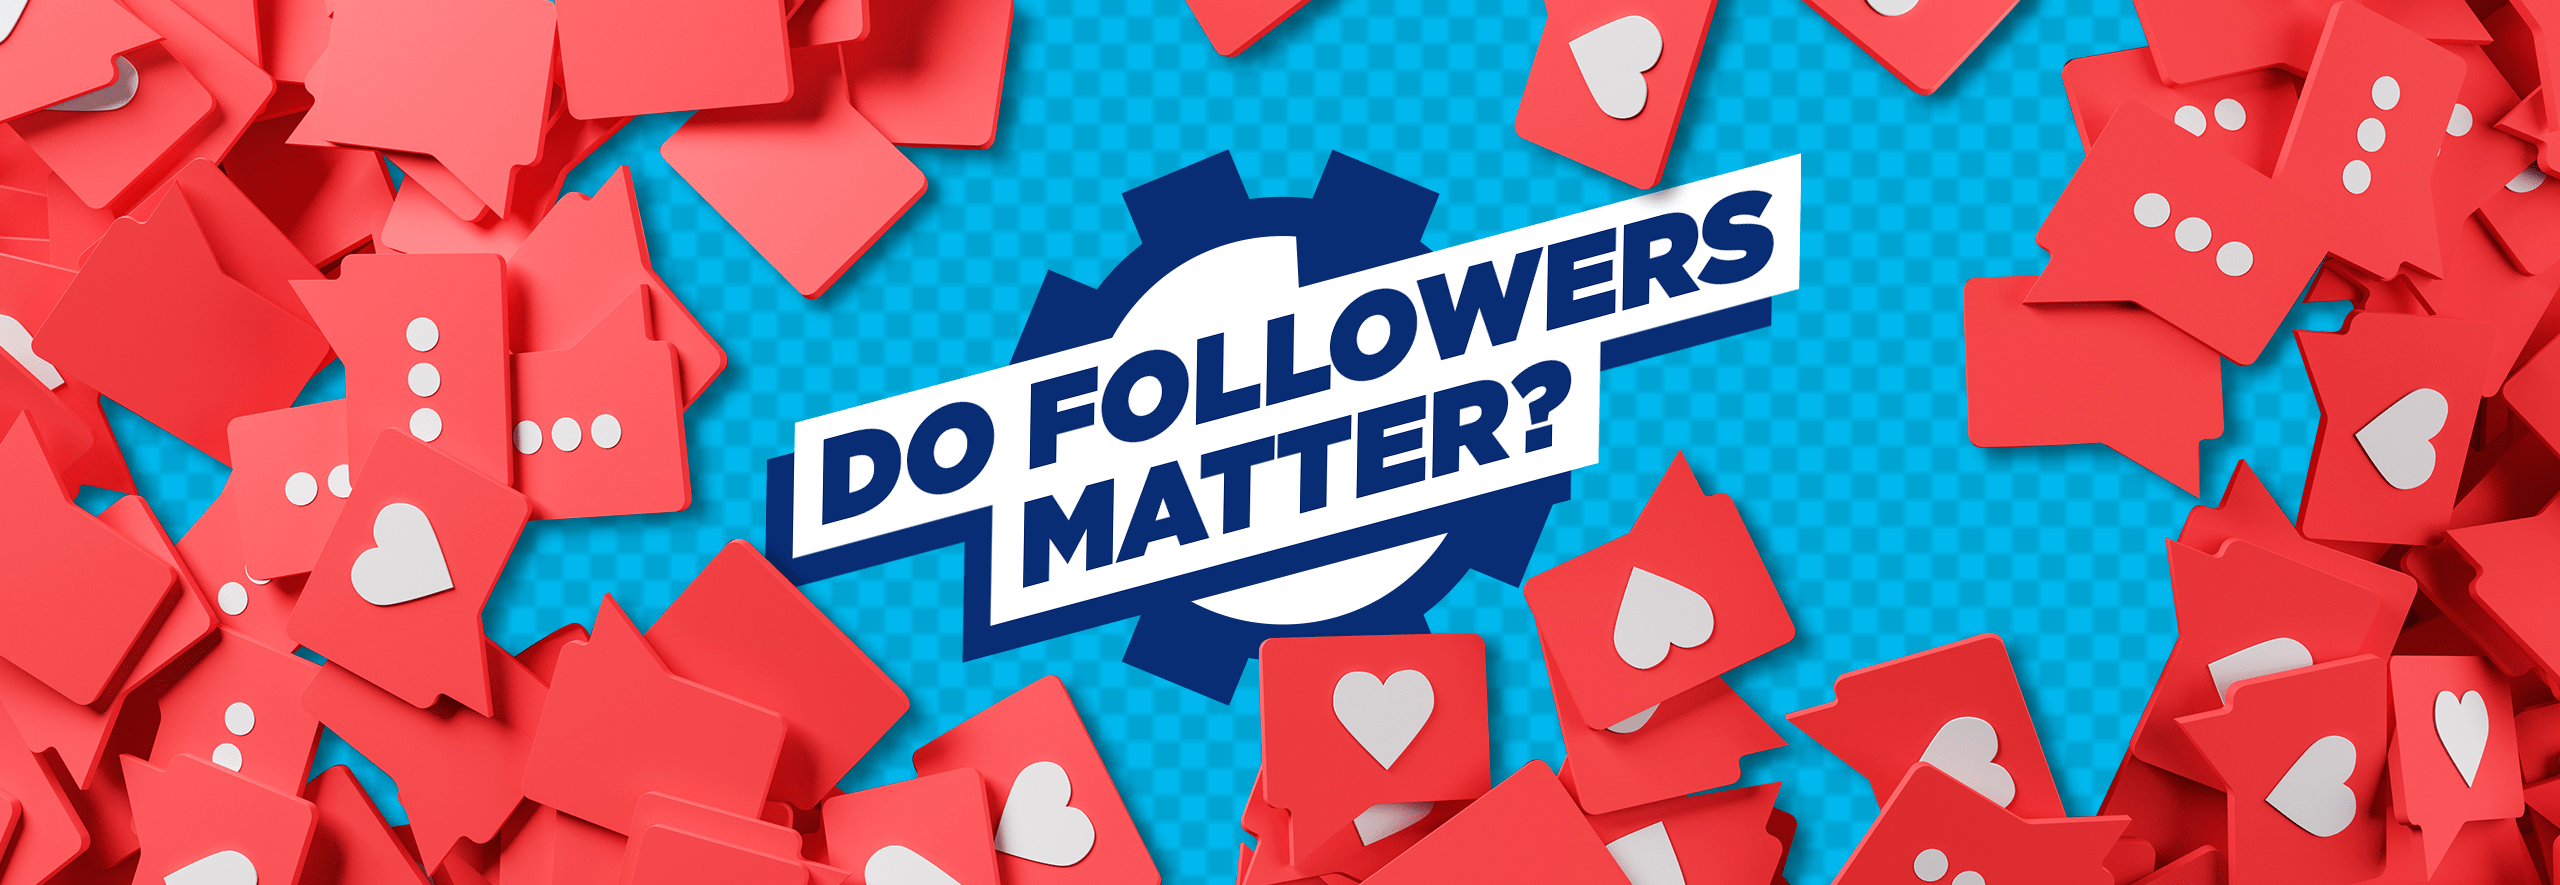 Do Followers Matter?